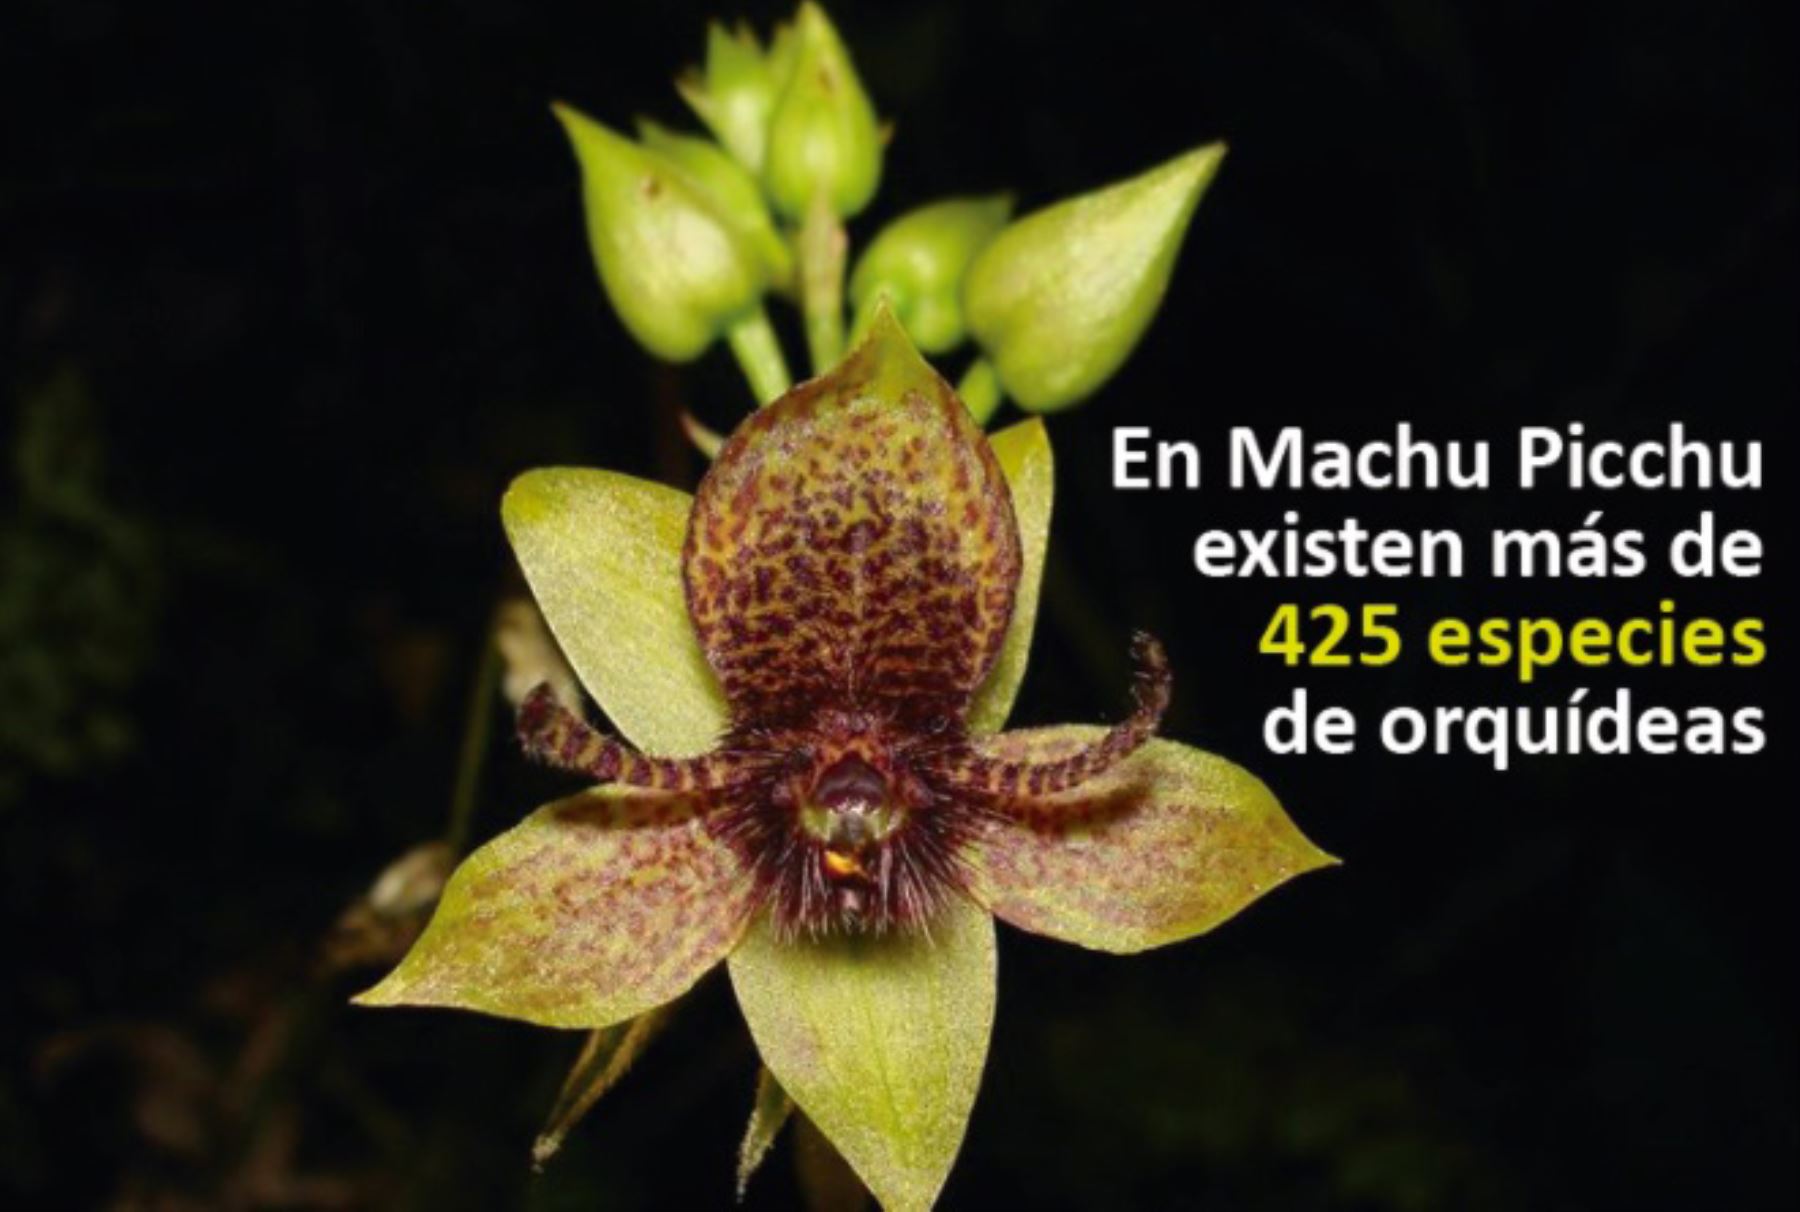 En el santuario histórico de Machu Picchu existen más de 425 especies de orquídeas, algunas de ellas oriundas de esta área natural protegida por el Estado.